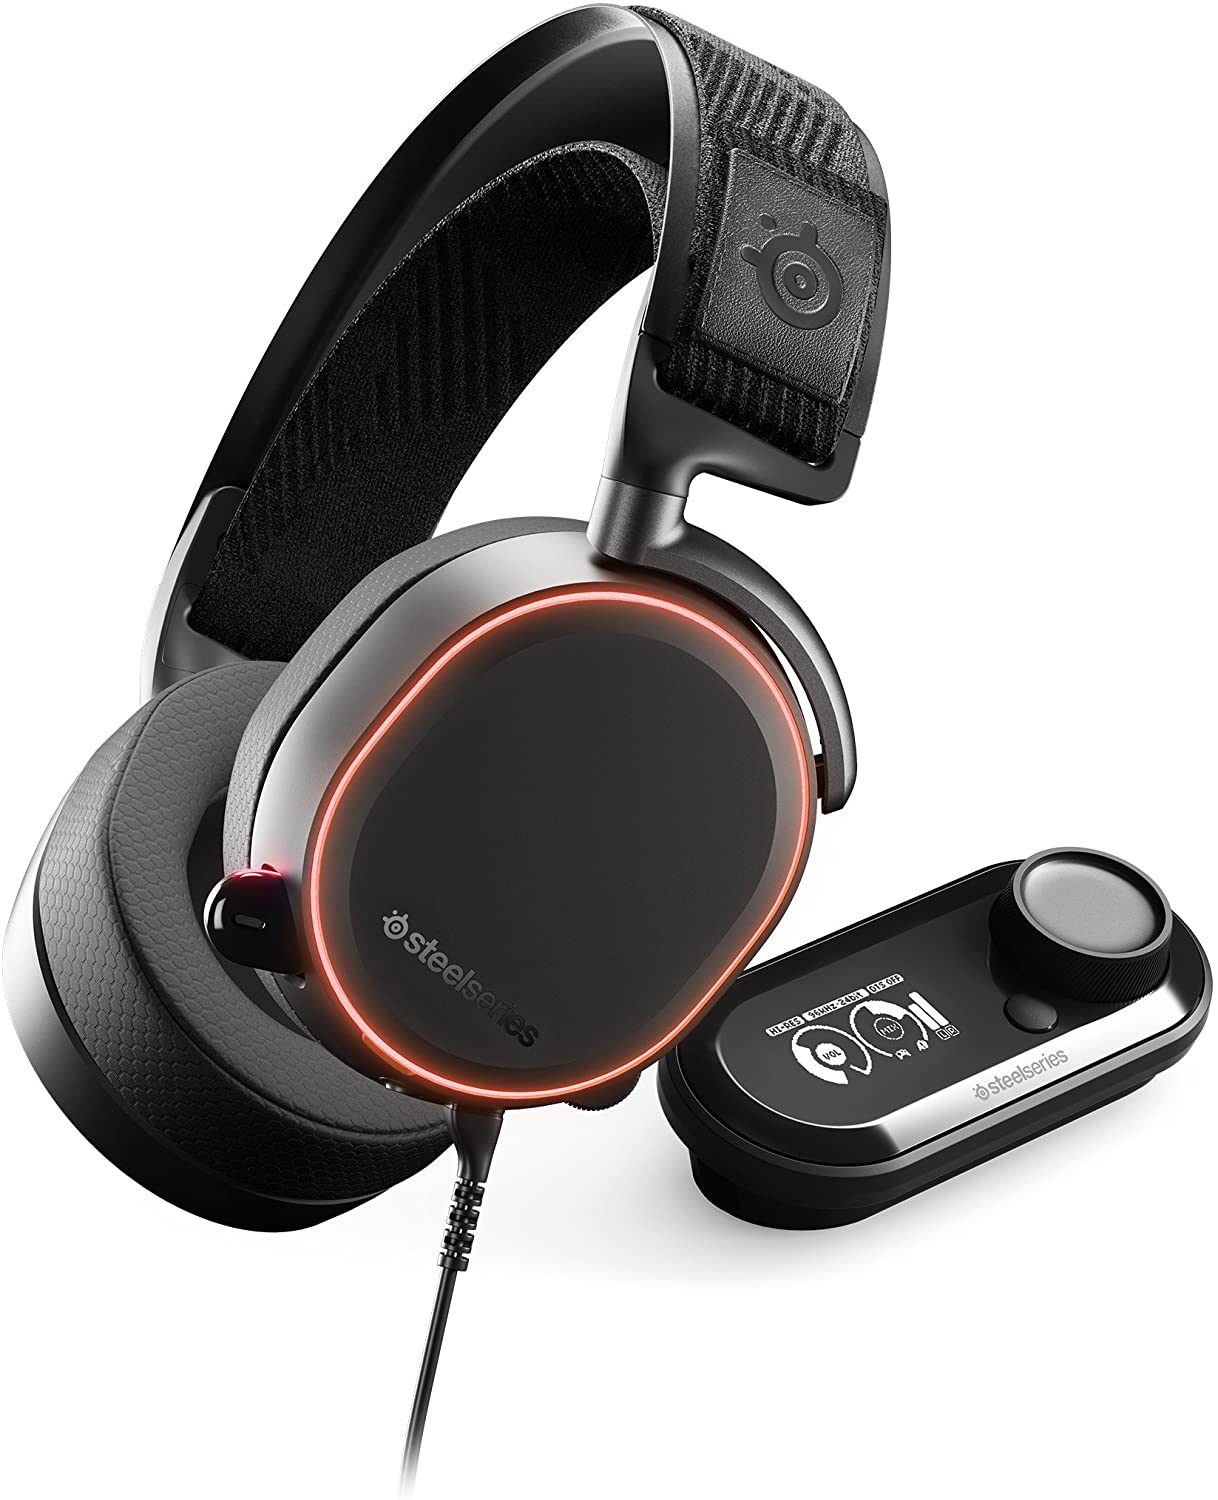 אוזניות גימינג Arctis Pro + GameDAC White Steelseries צבע שחור